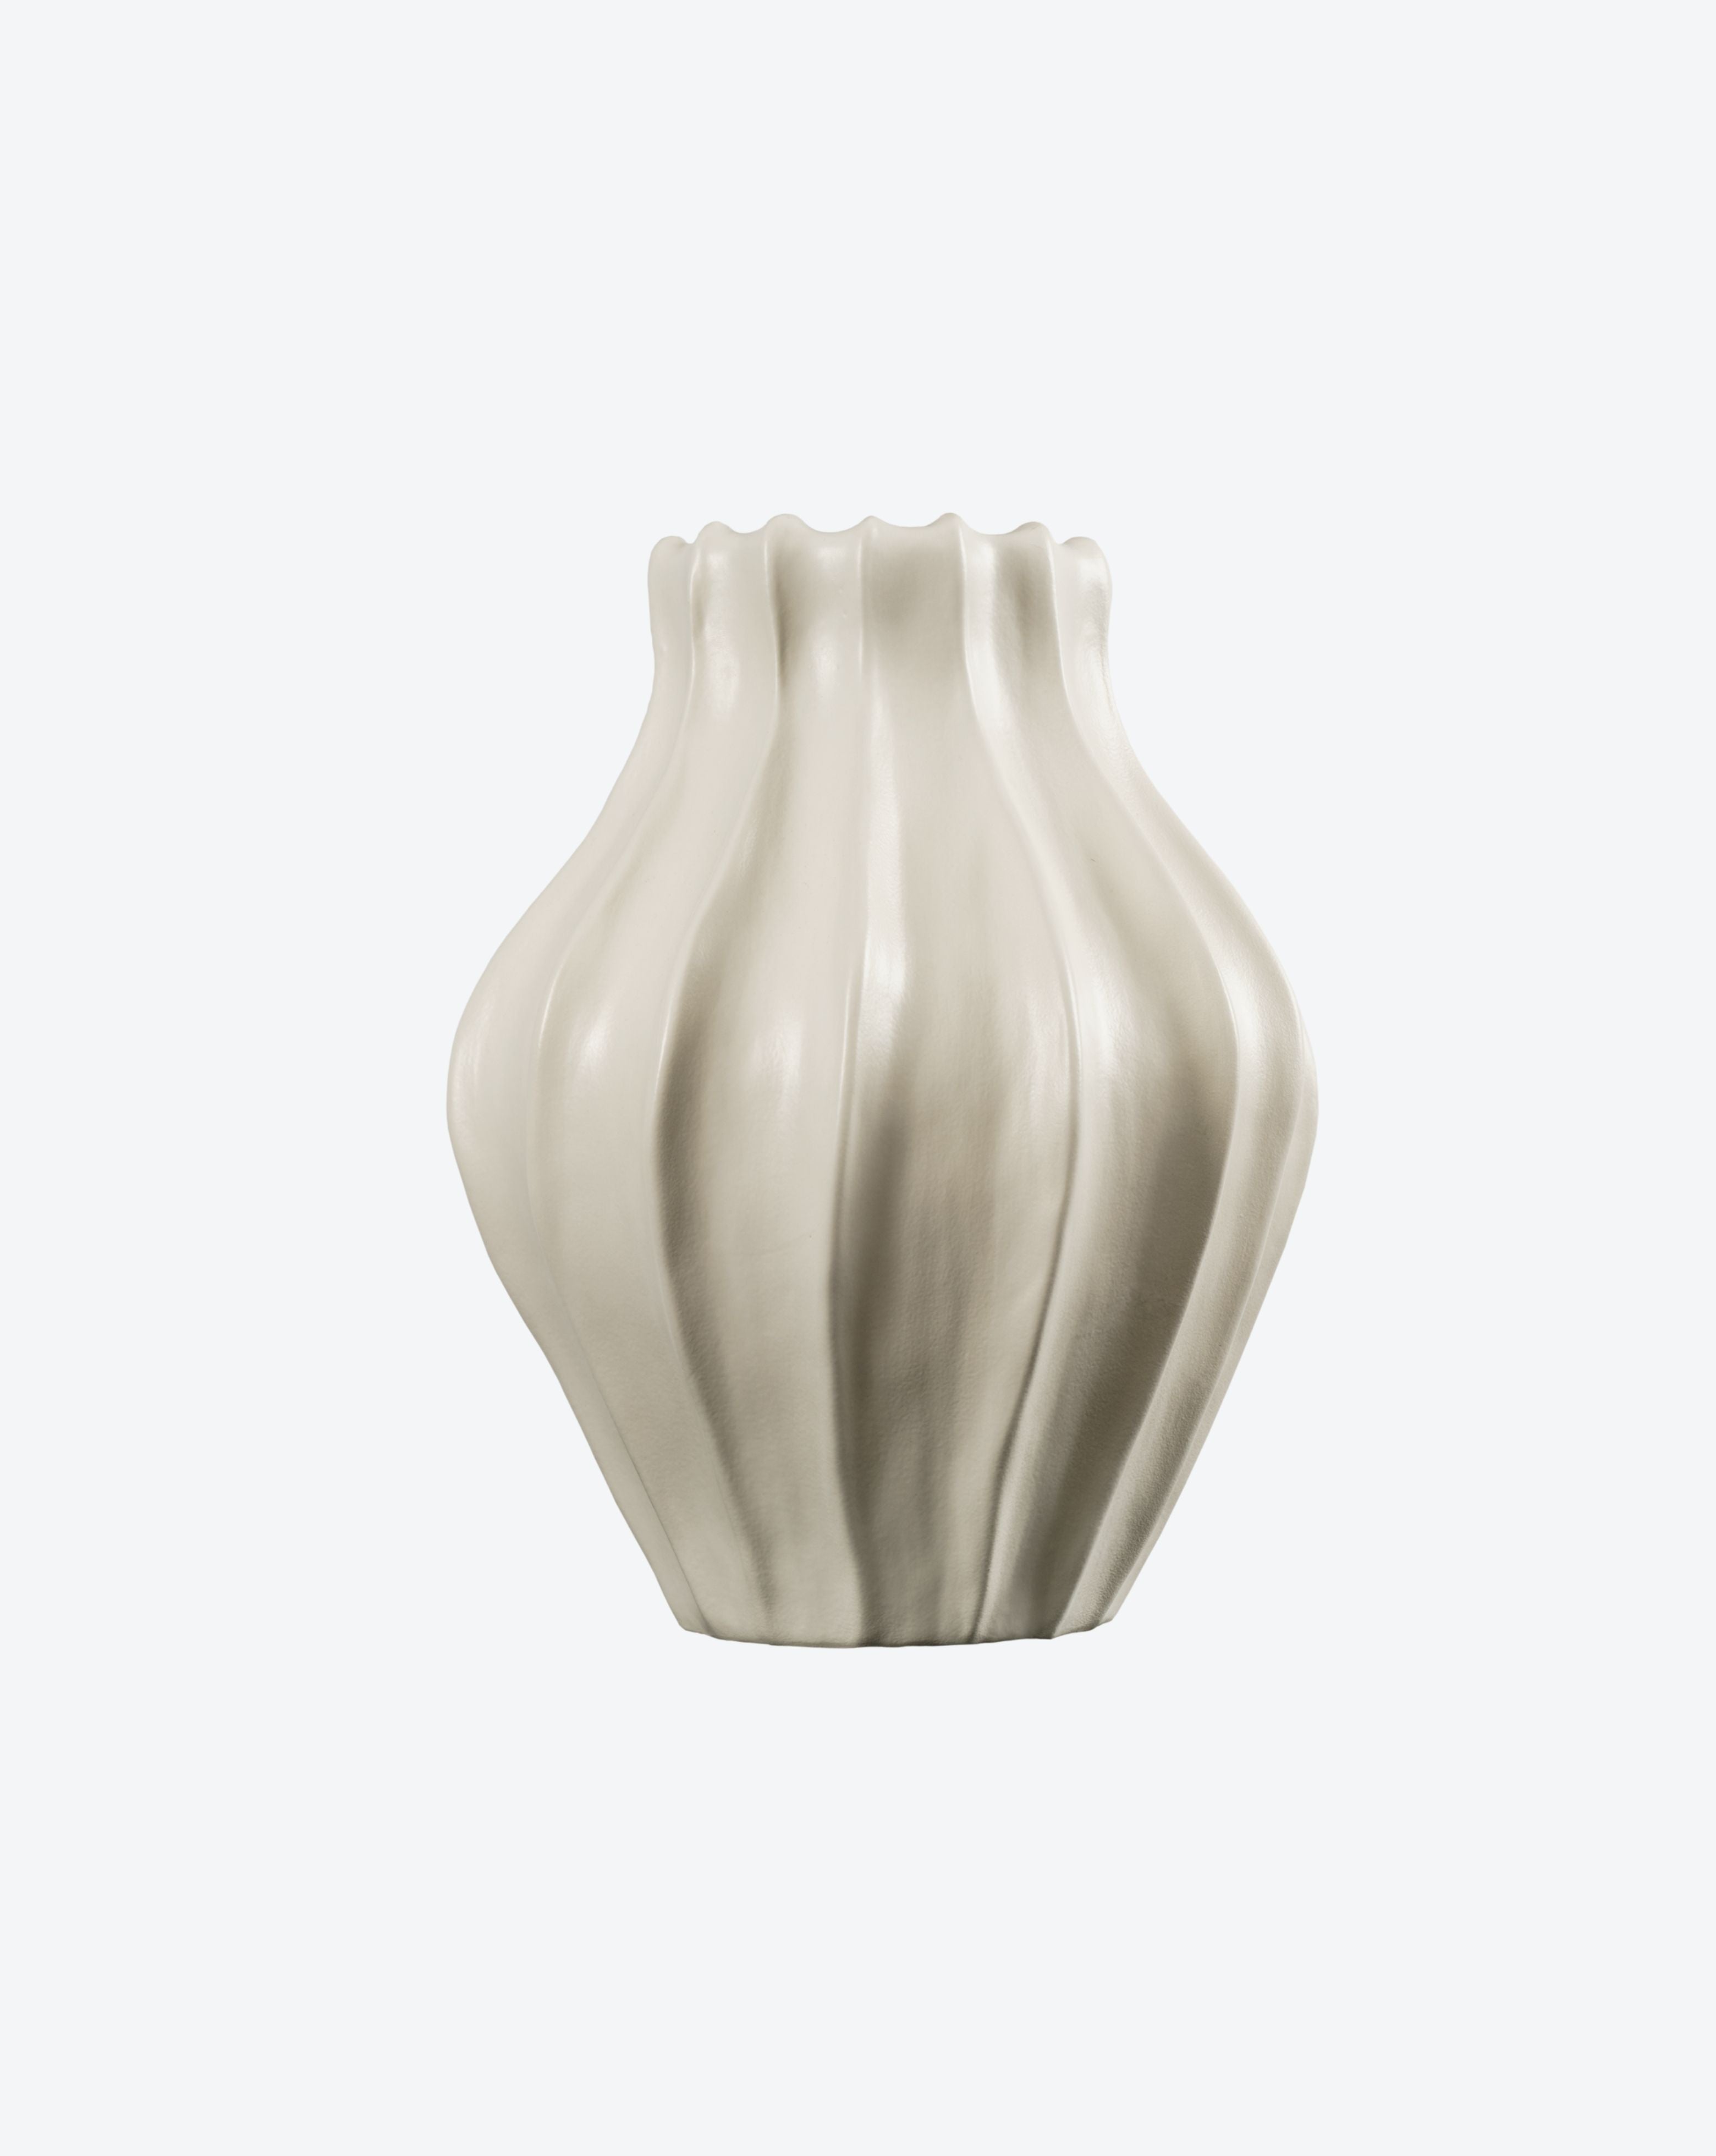 Medium Cloak Vase